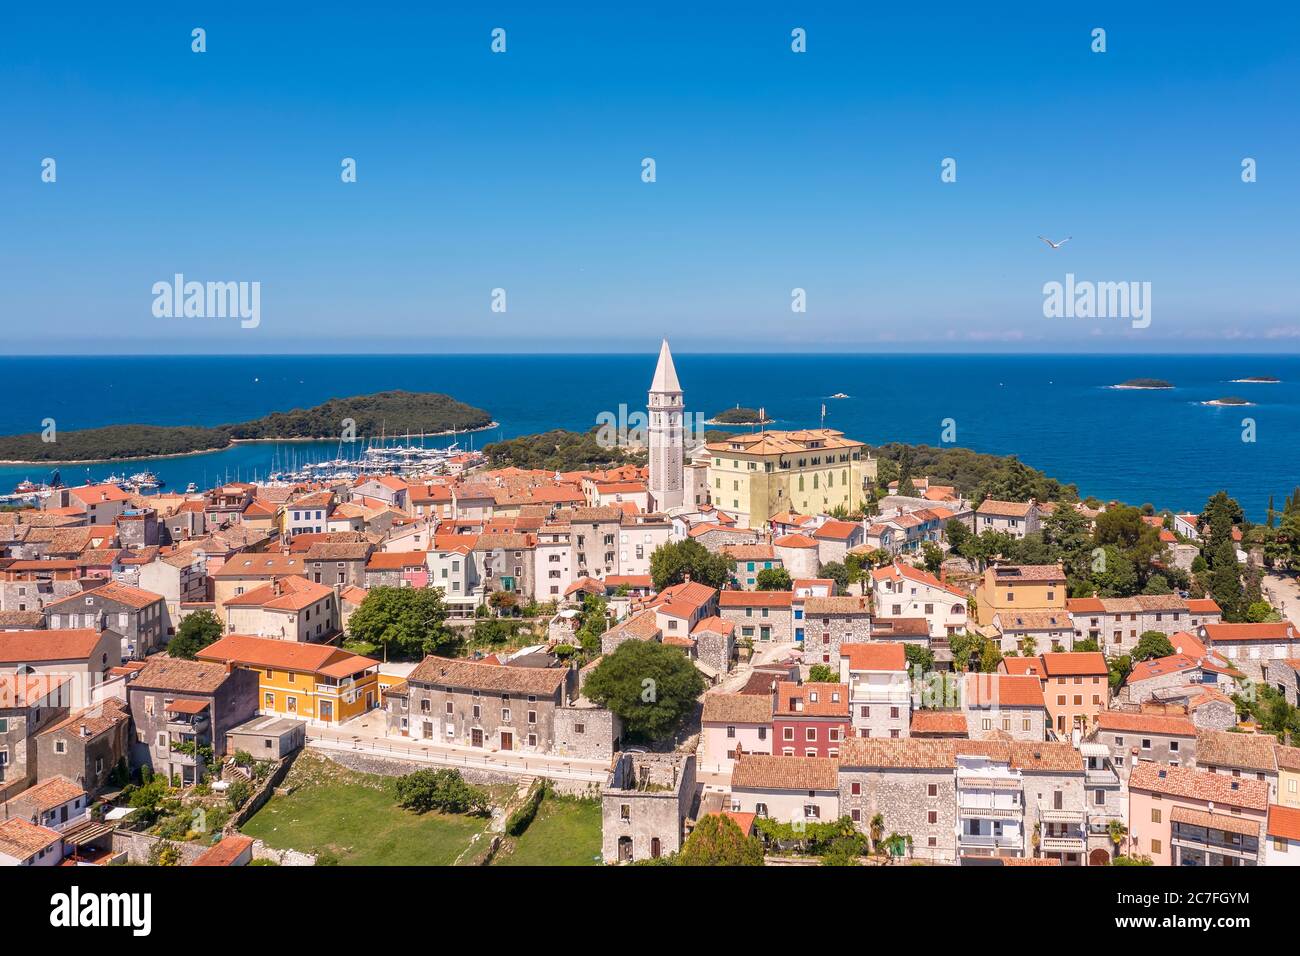 Une photo aérienne de la ville côtière de Vrsar, Istrie, Croatie Banque D'Images